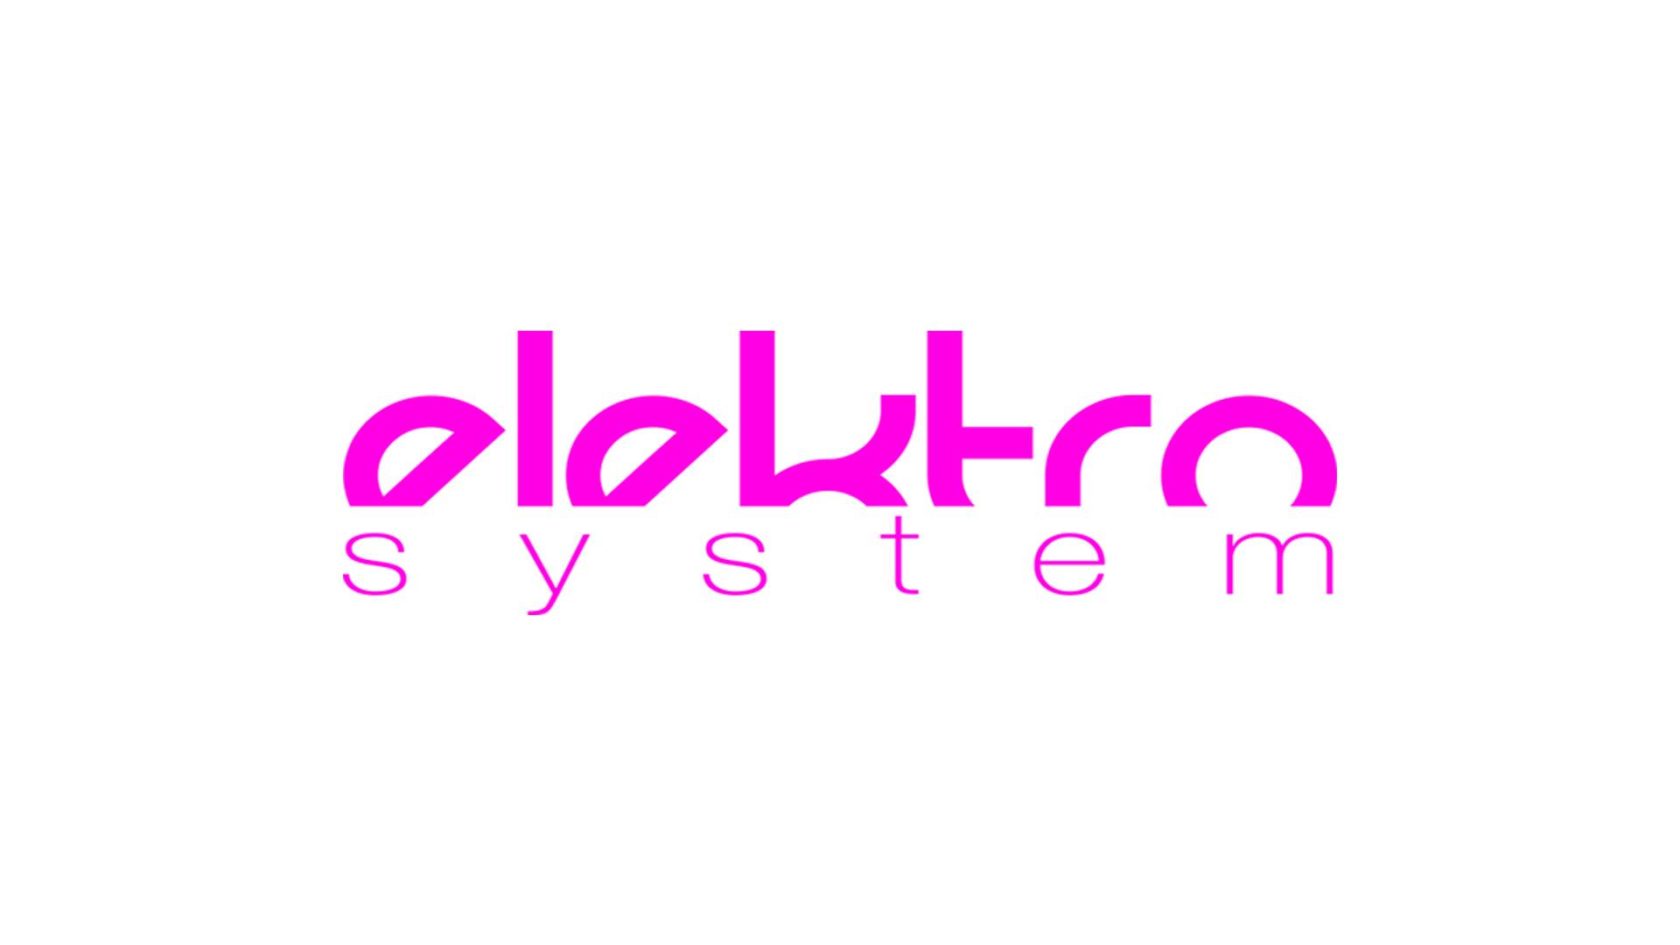 Elektro System fête la musique au Bellona Club (entrée libre)